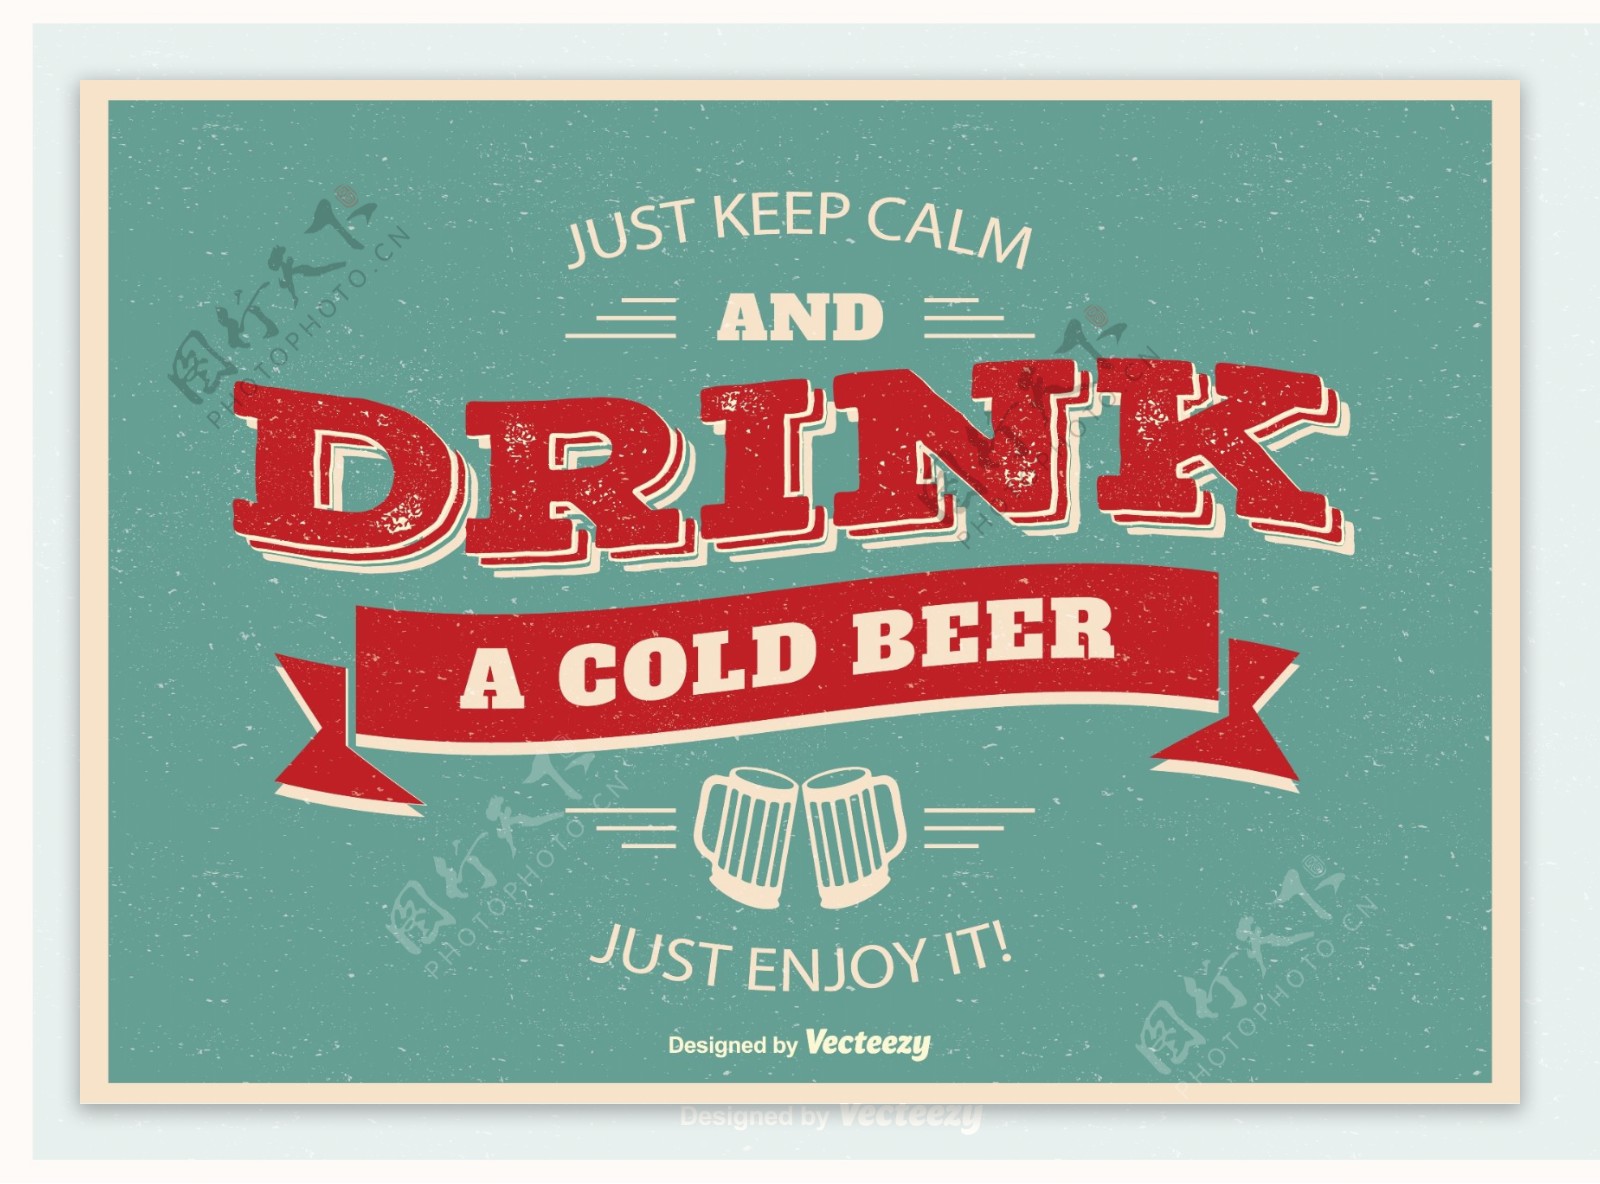 印刷啤酒海报